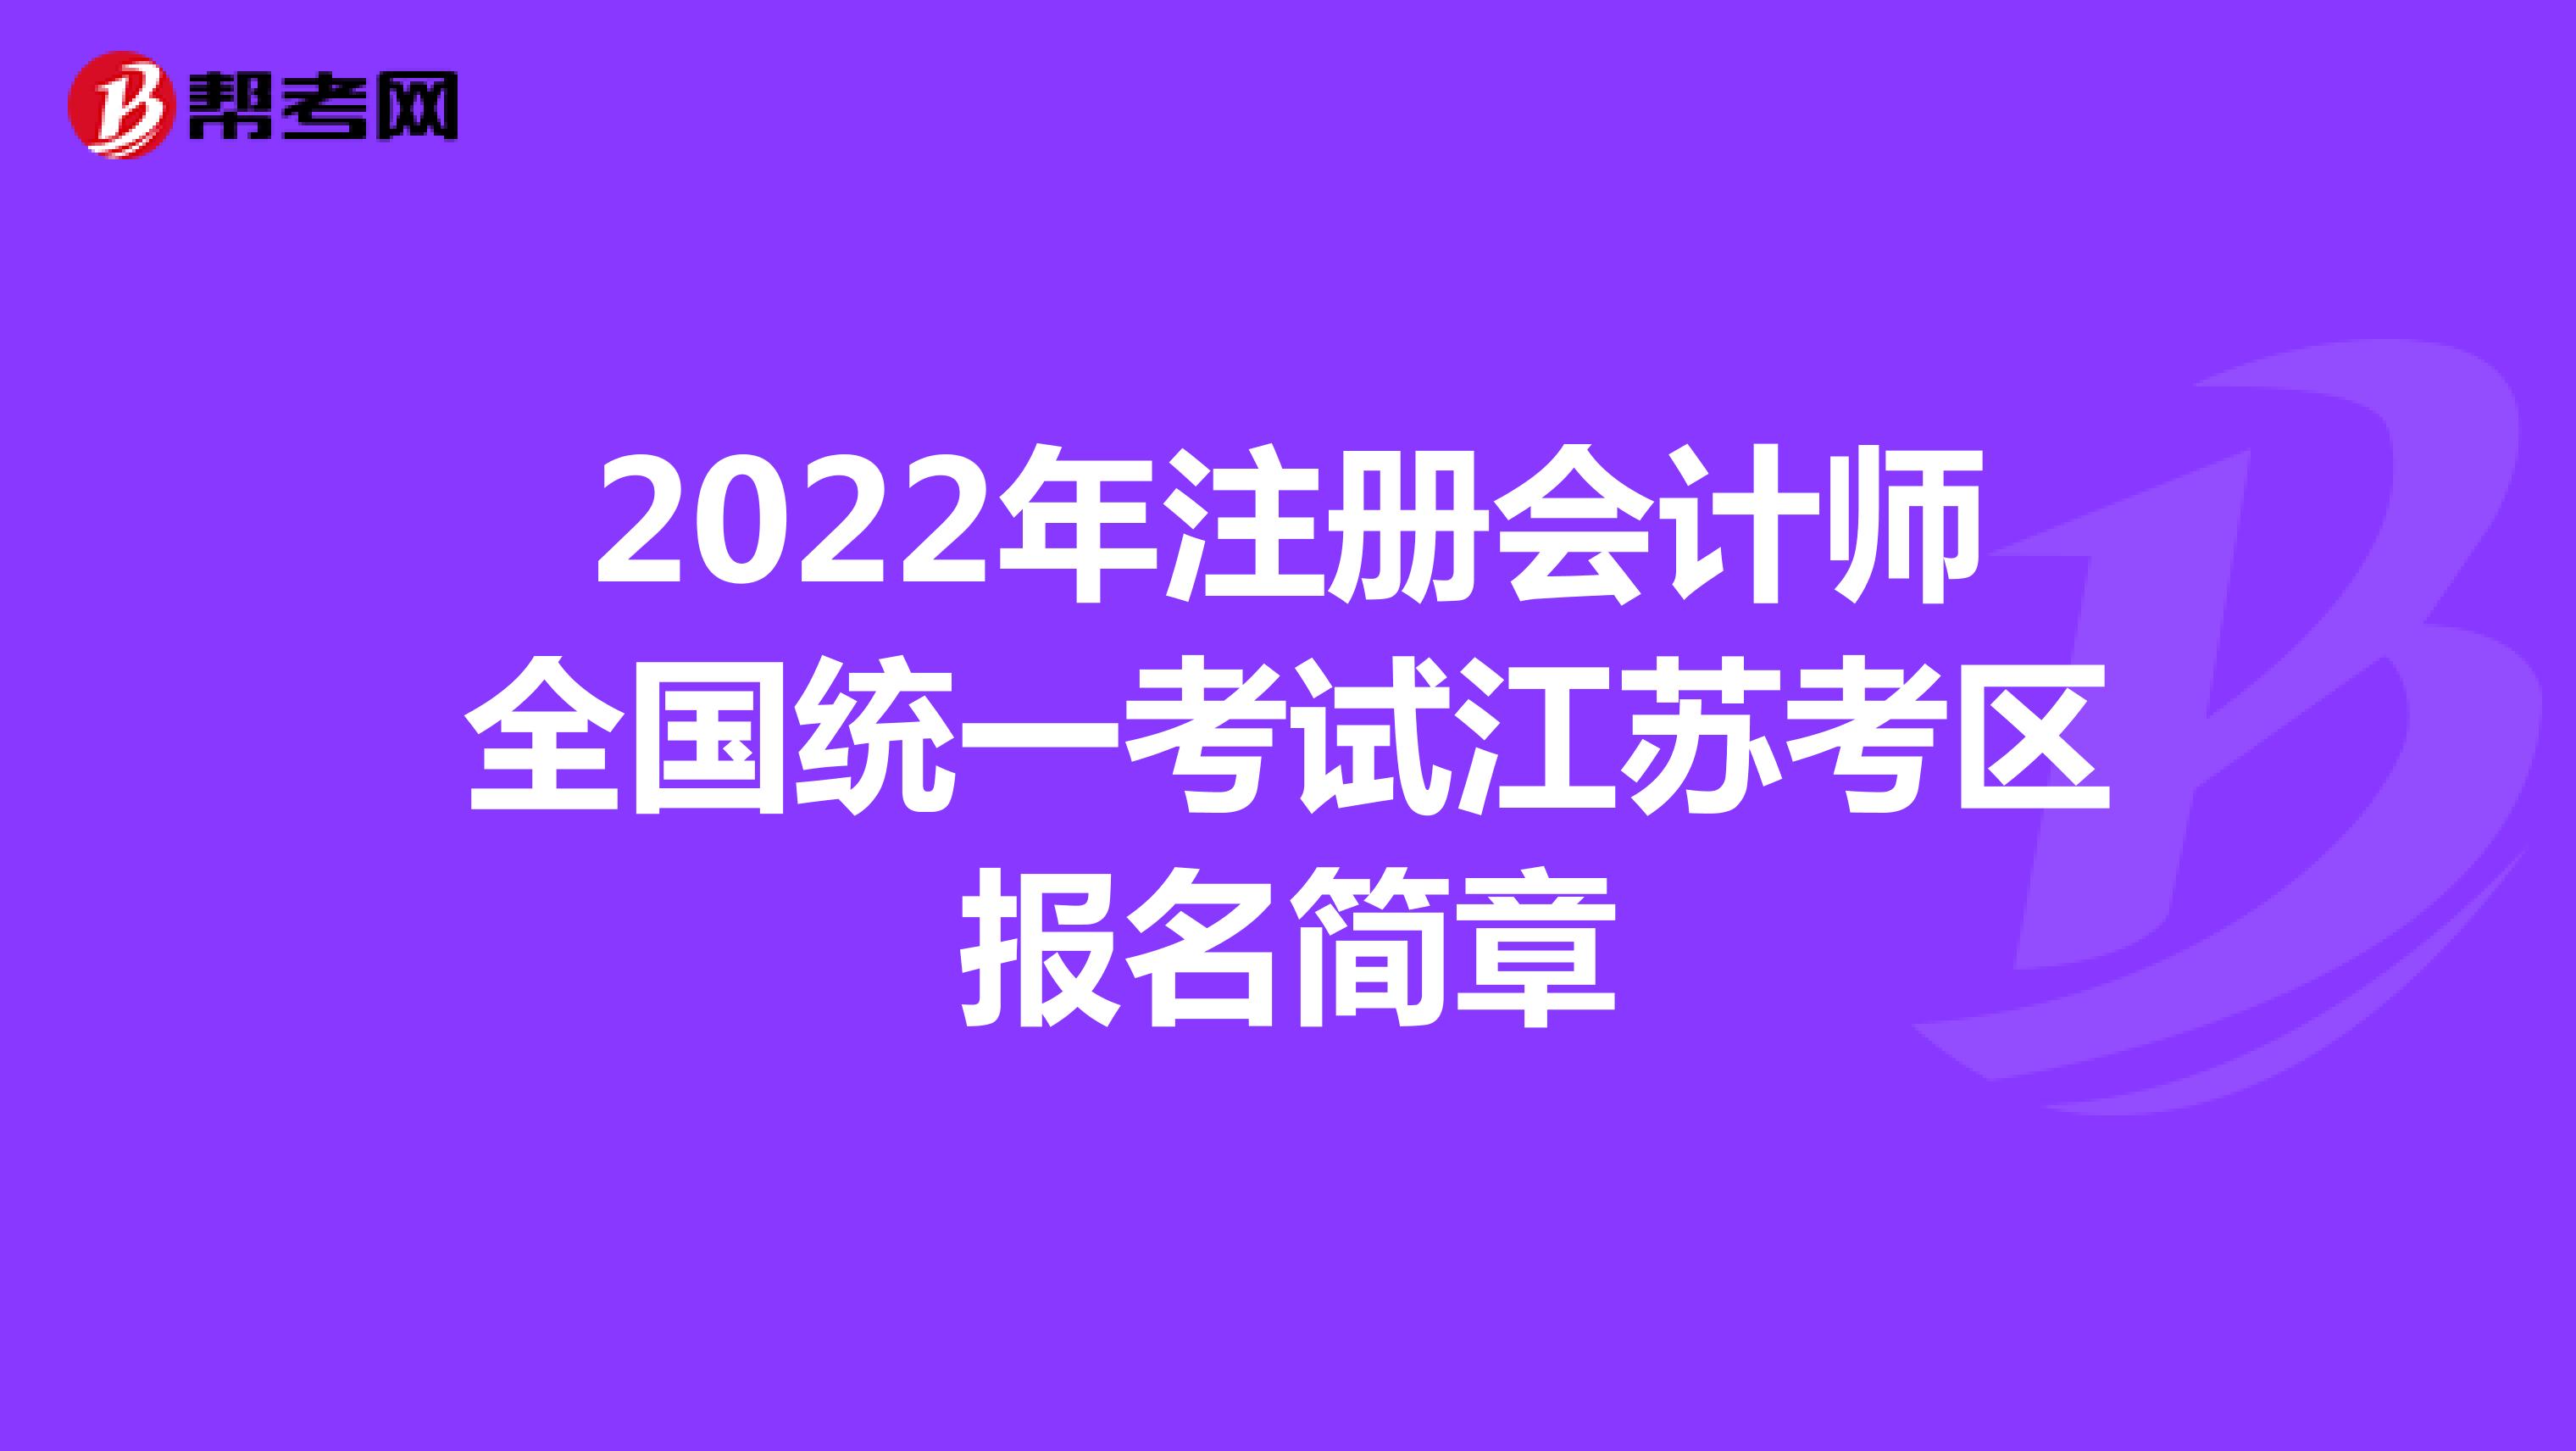 2022年注冊會計師全國統一考試江蘇考區報名簡章